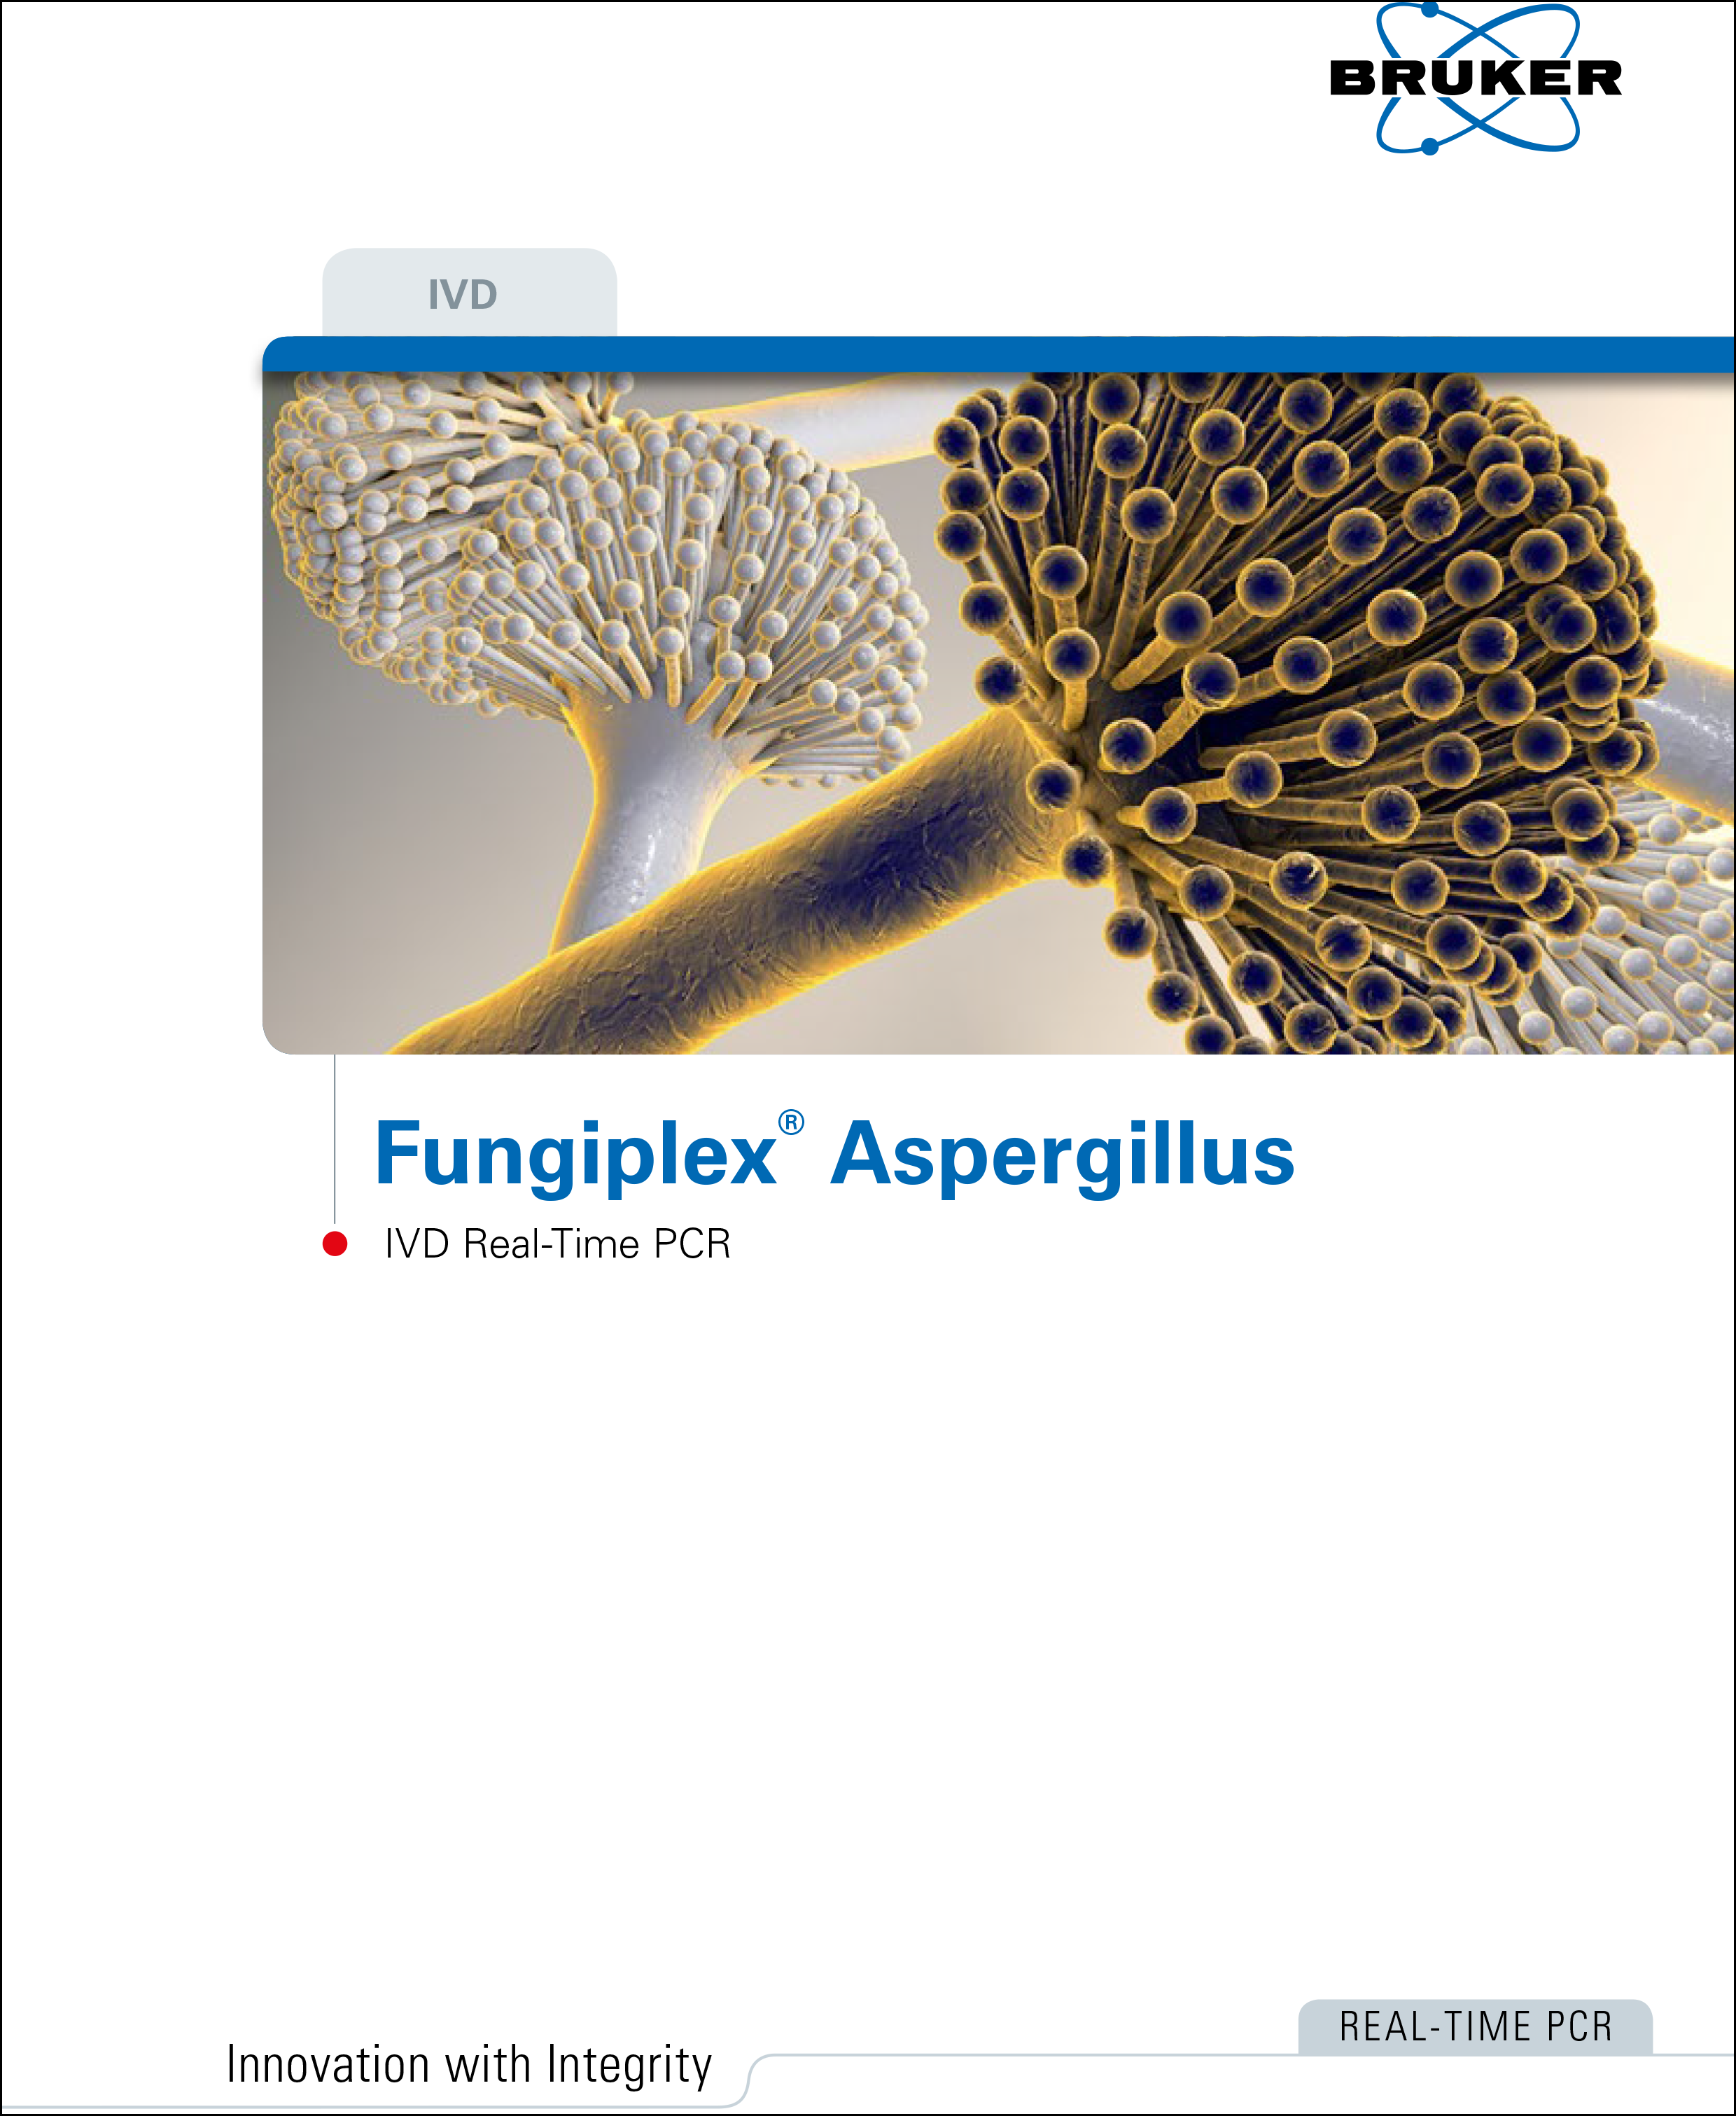 Fungiplex® Aspergillus IVD Real-Time PCR Kit